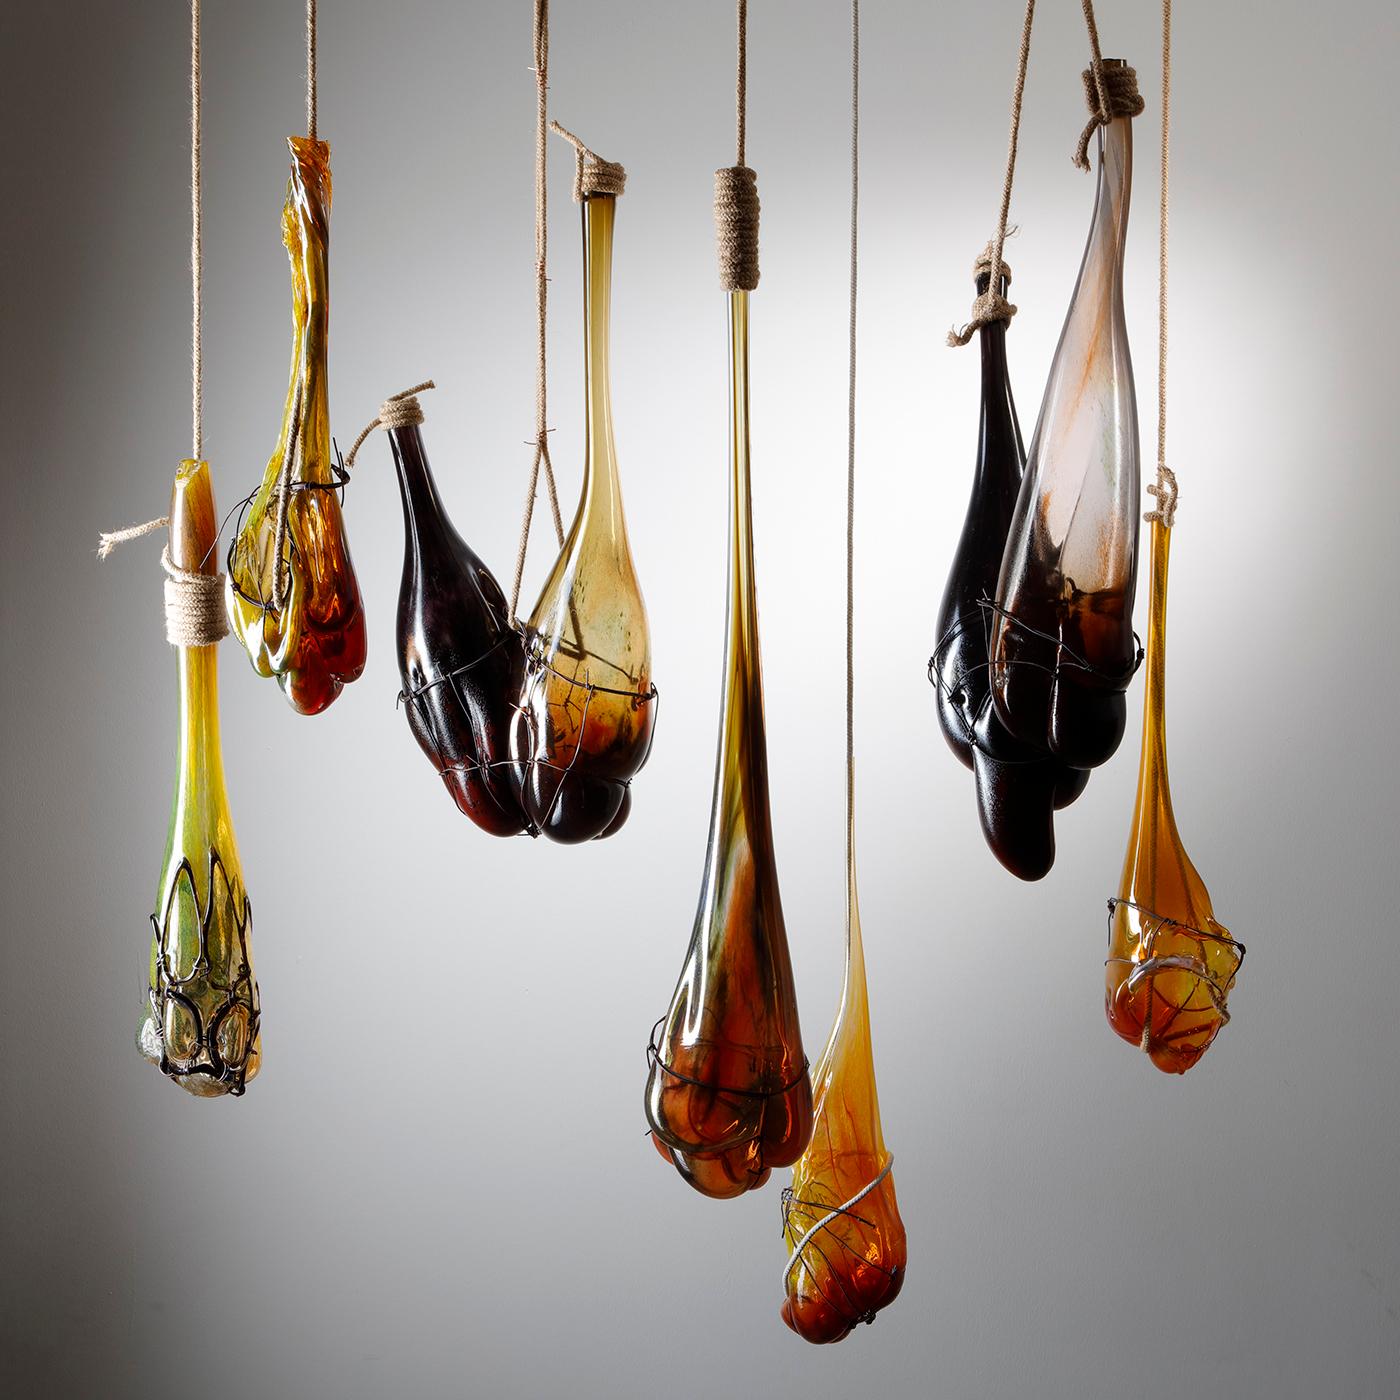 Strange fruit Installation ist eine einzigartige Hängeskulptur des britischen Künstlers Chris Day, die aus mundgeblasenem und geformtem Glas mit Stahl, hessischer Schnur, wiederverwendetem Elektrokabel und Fleischerhaken besteht.

Der in den West